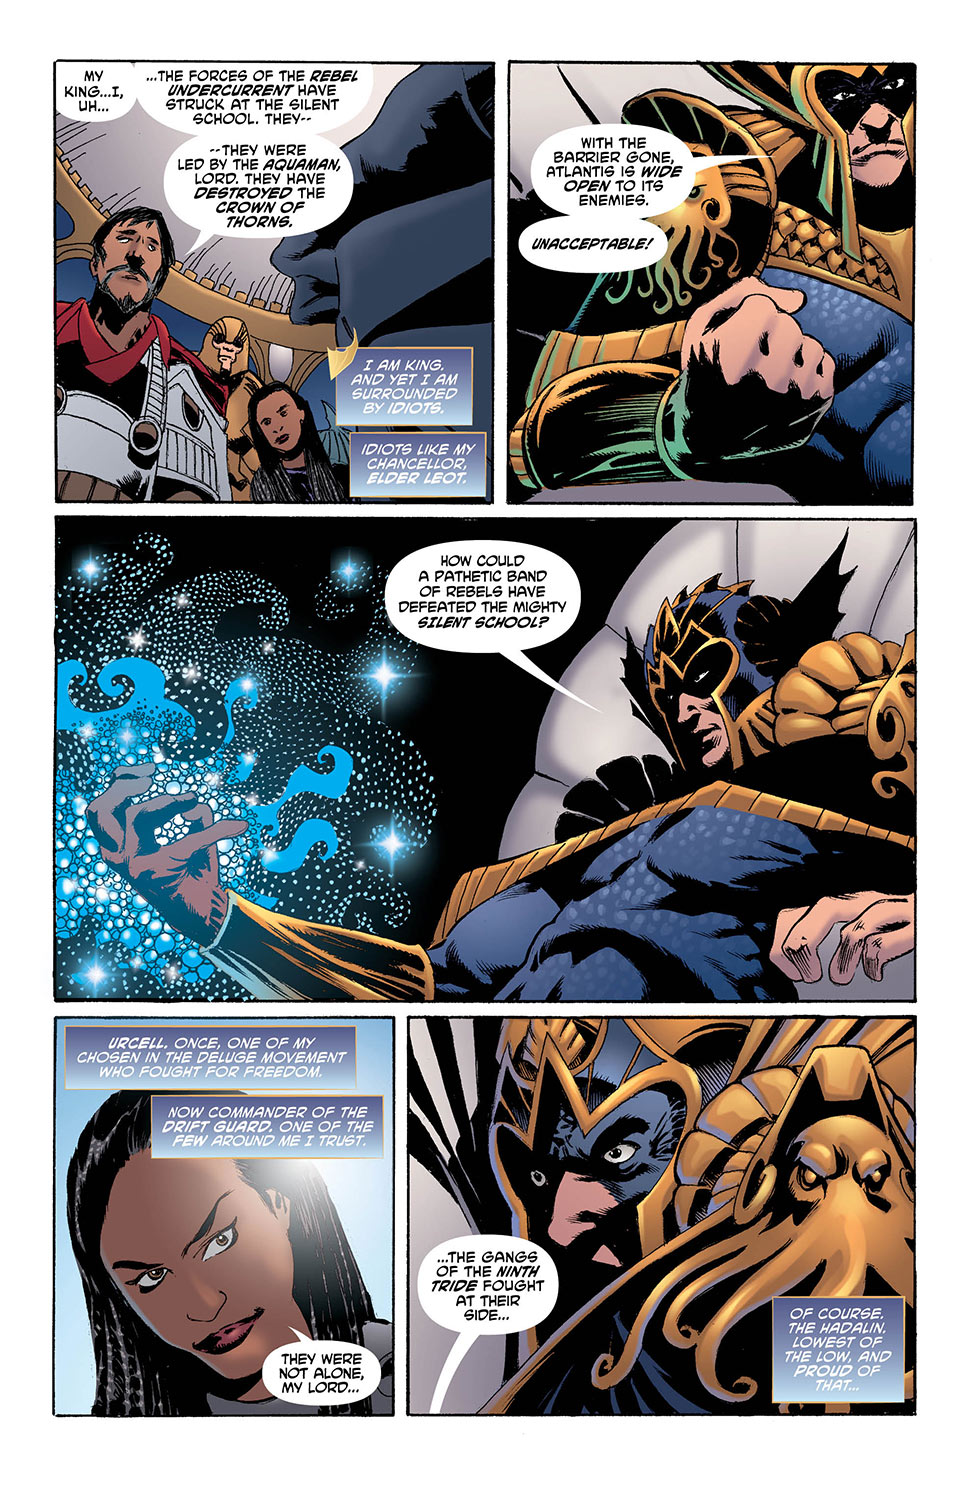 Aquaman 34-3 - DC Comics News